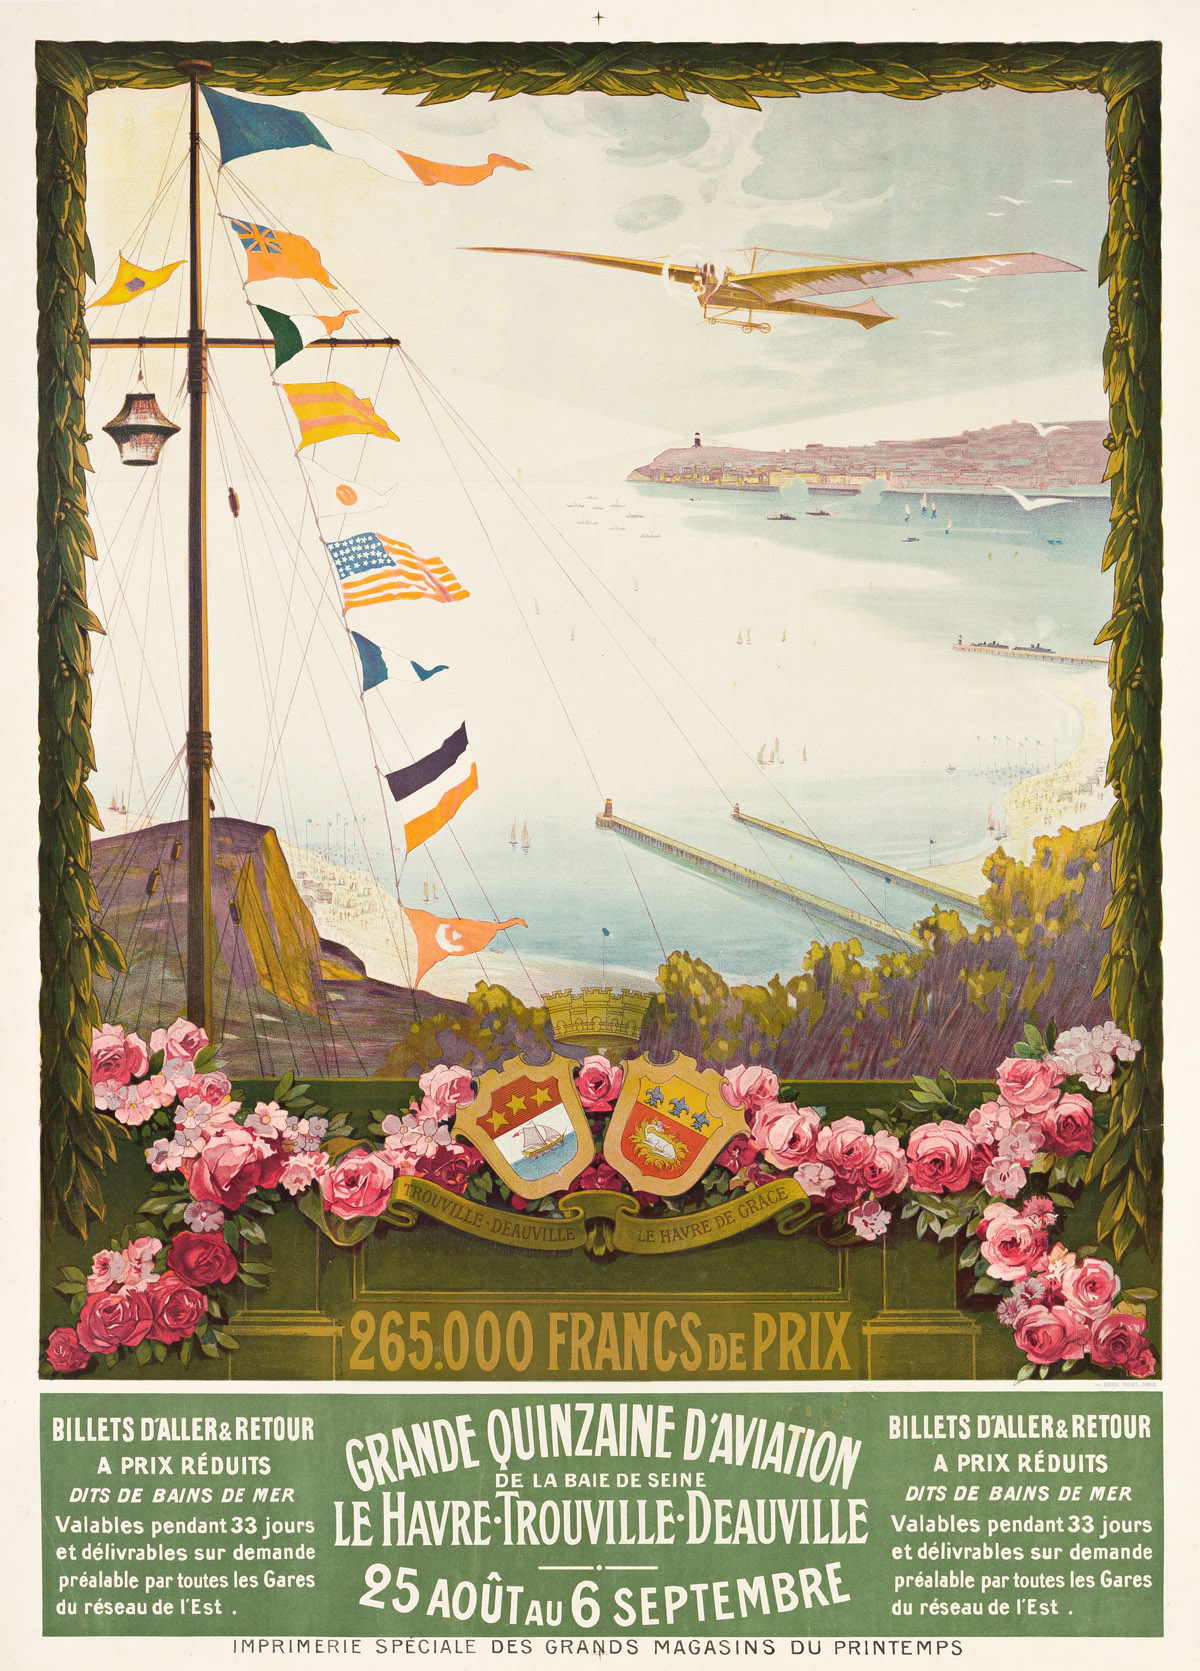 DESIGNER UNKNOWN.  GRANDE QUINZAINE DAVIATION / LE HAVRE - TROUVILLE - DEAUVILLE. 1910. 41x29½ inches, 104x75 cm. Daude Freres, Paris.